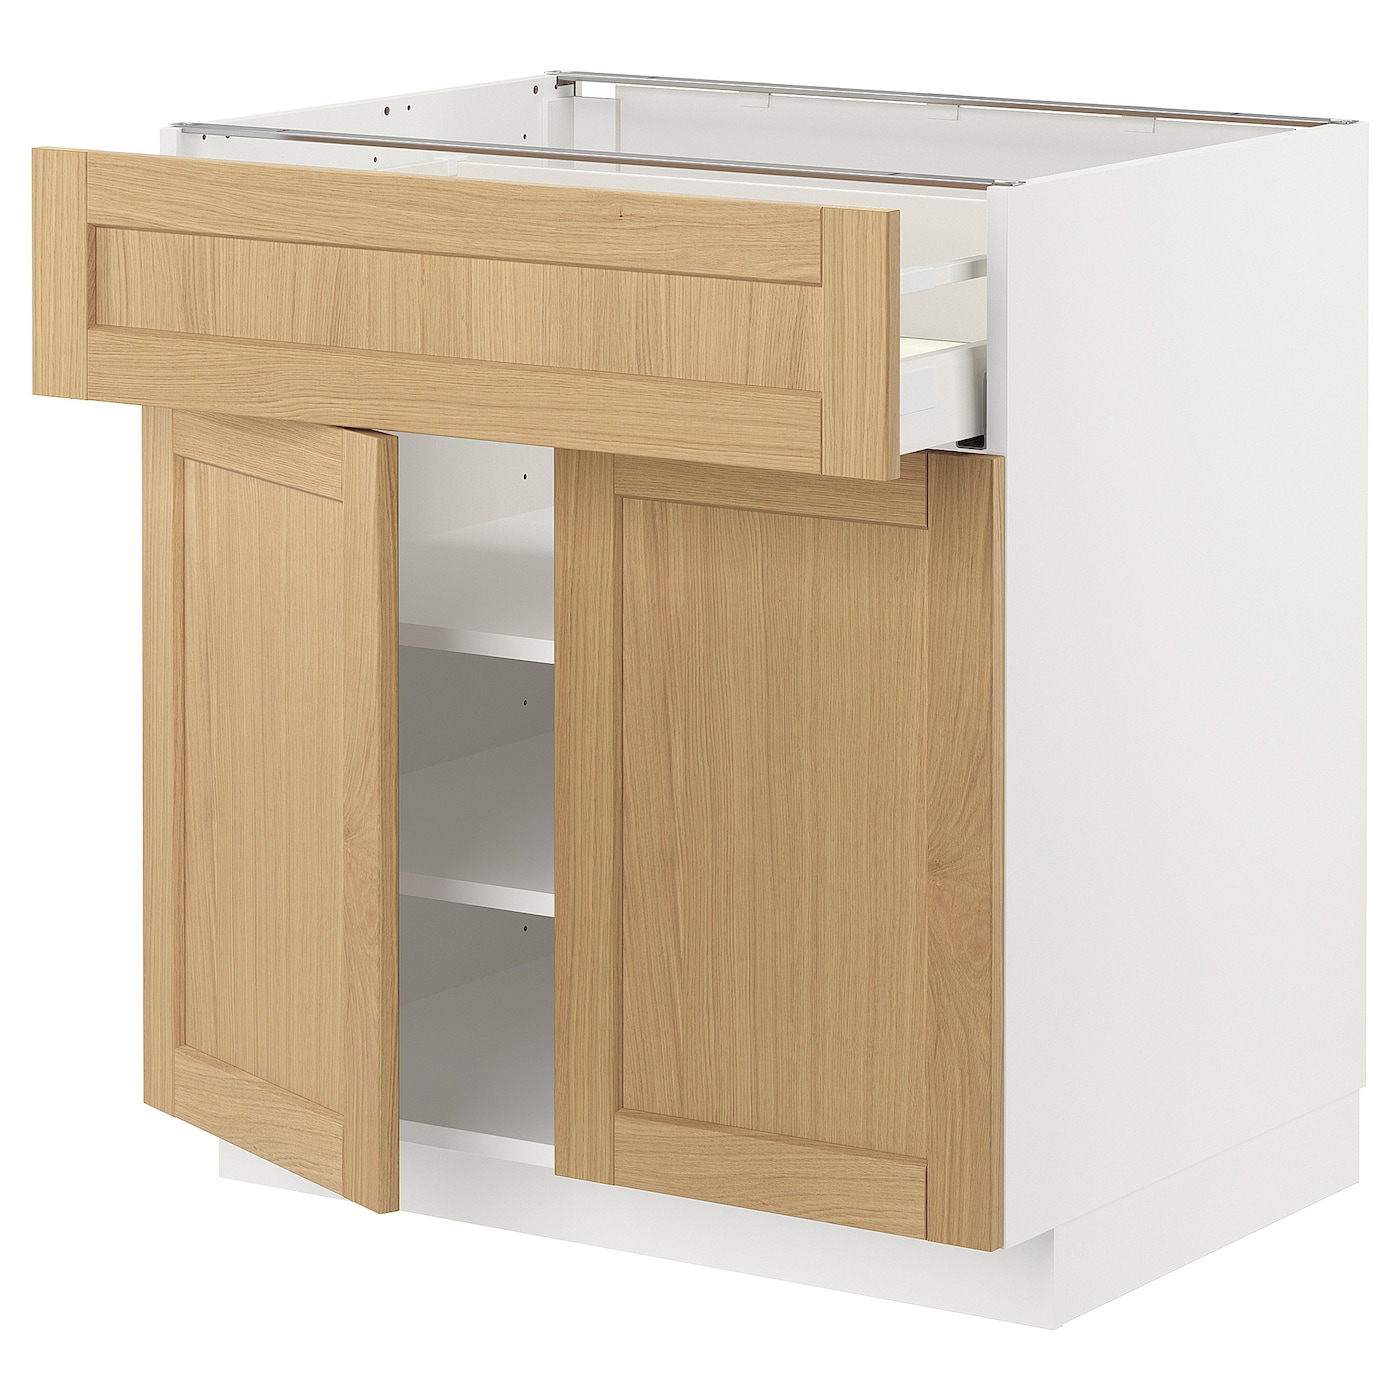 Напольный шкаф - METOD / MAXIMERA IKEA/ МЕТОД/ МАКСИМЕРА ИКЕА,  80х60 см, белый/под беленый дуб